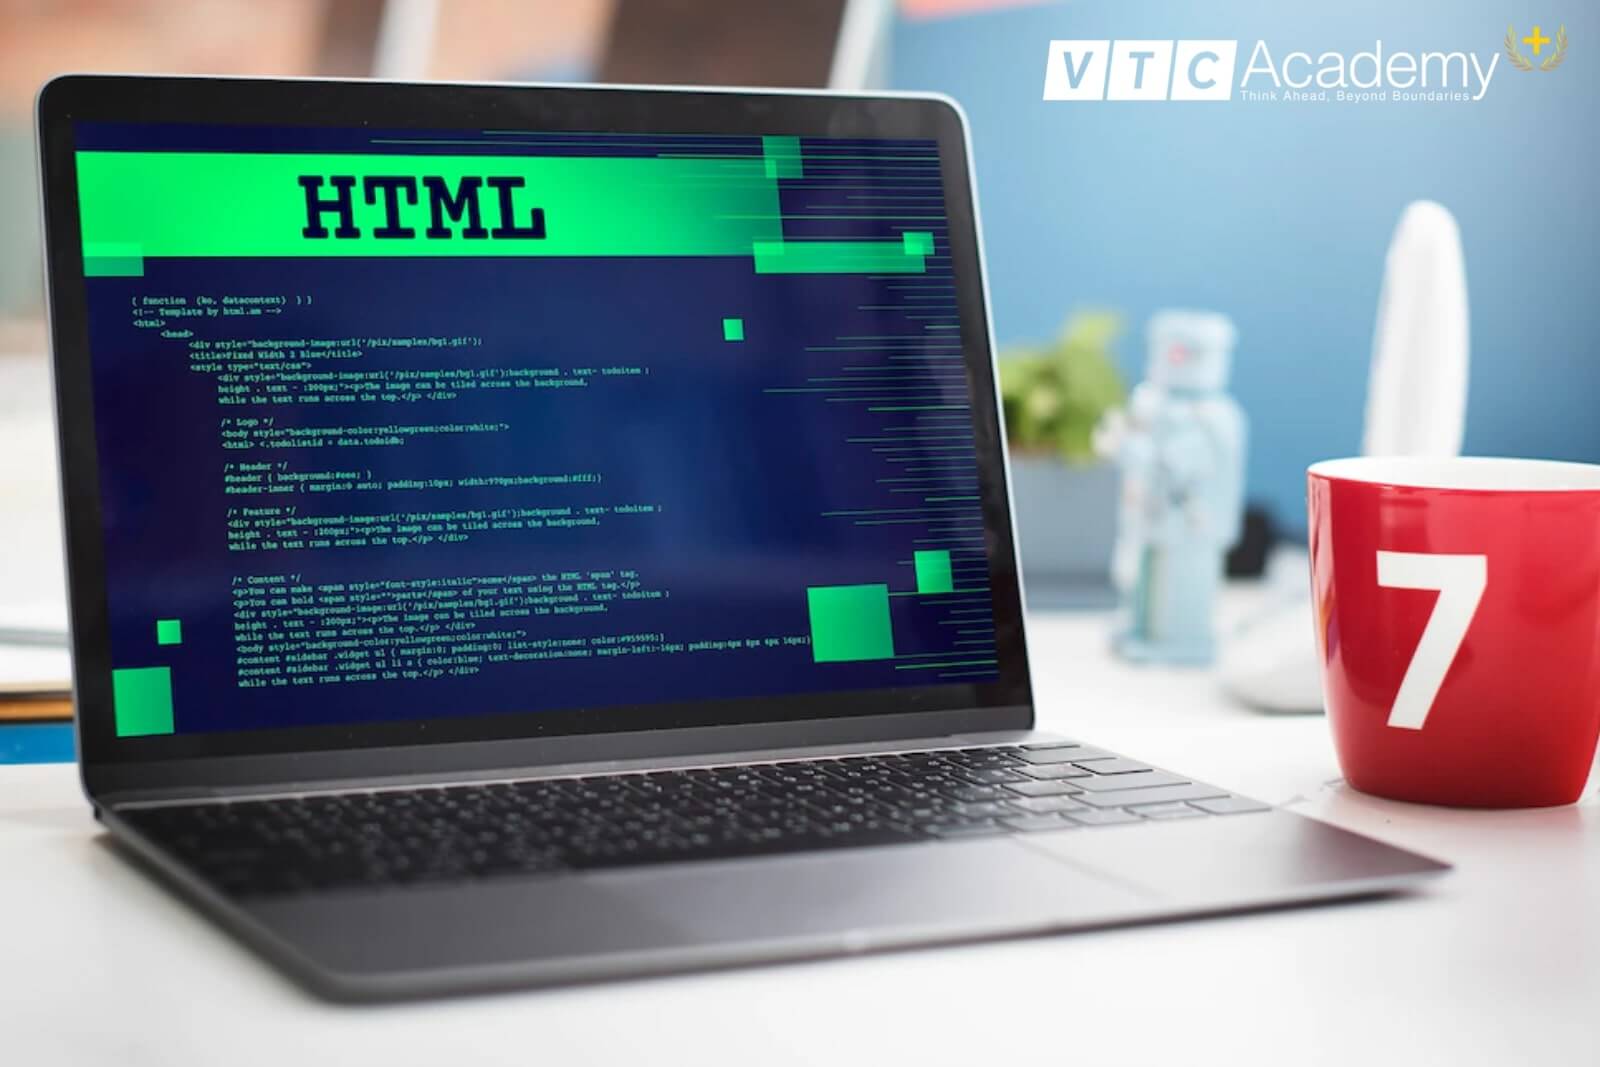 HTML: Hãy khám phá hình ảnh liên quan đến HTML để tìm hiểu về ngôn ngữ lập trình cơ bản và phổ biến nhất trên thế giới, giúp bạn tự tạo ra các trang web chất lượng và đáp ứng các nhu cầu khác nhau.